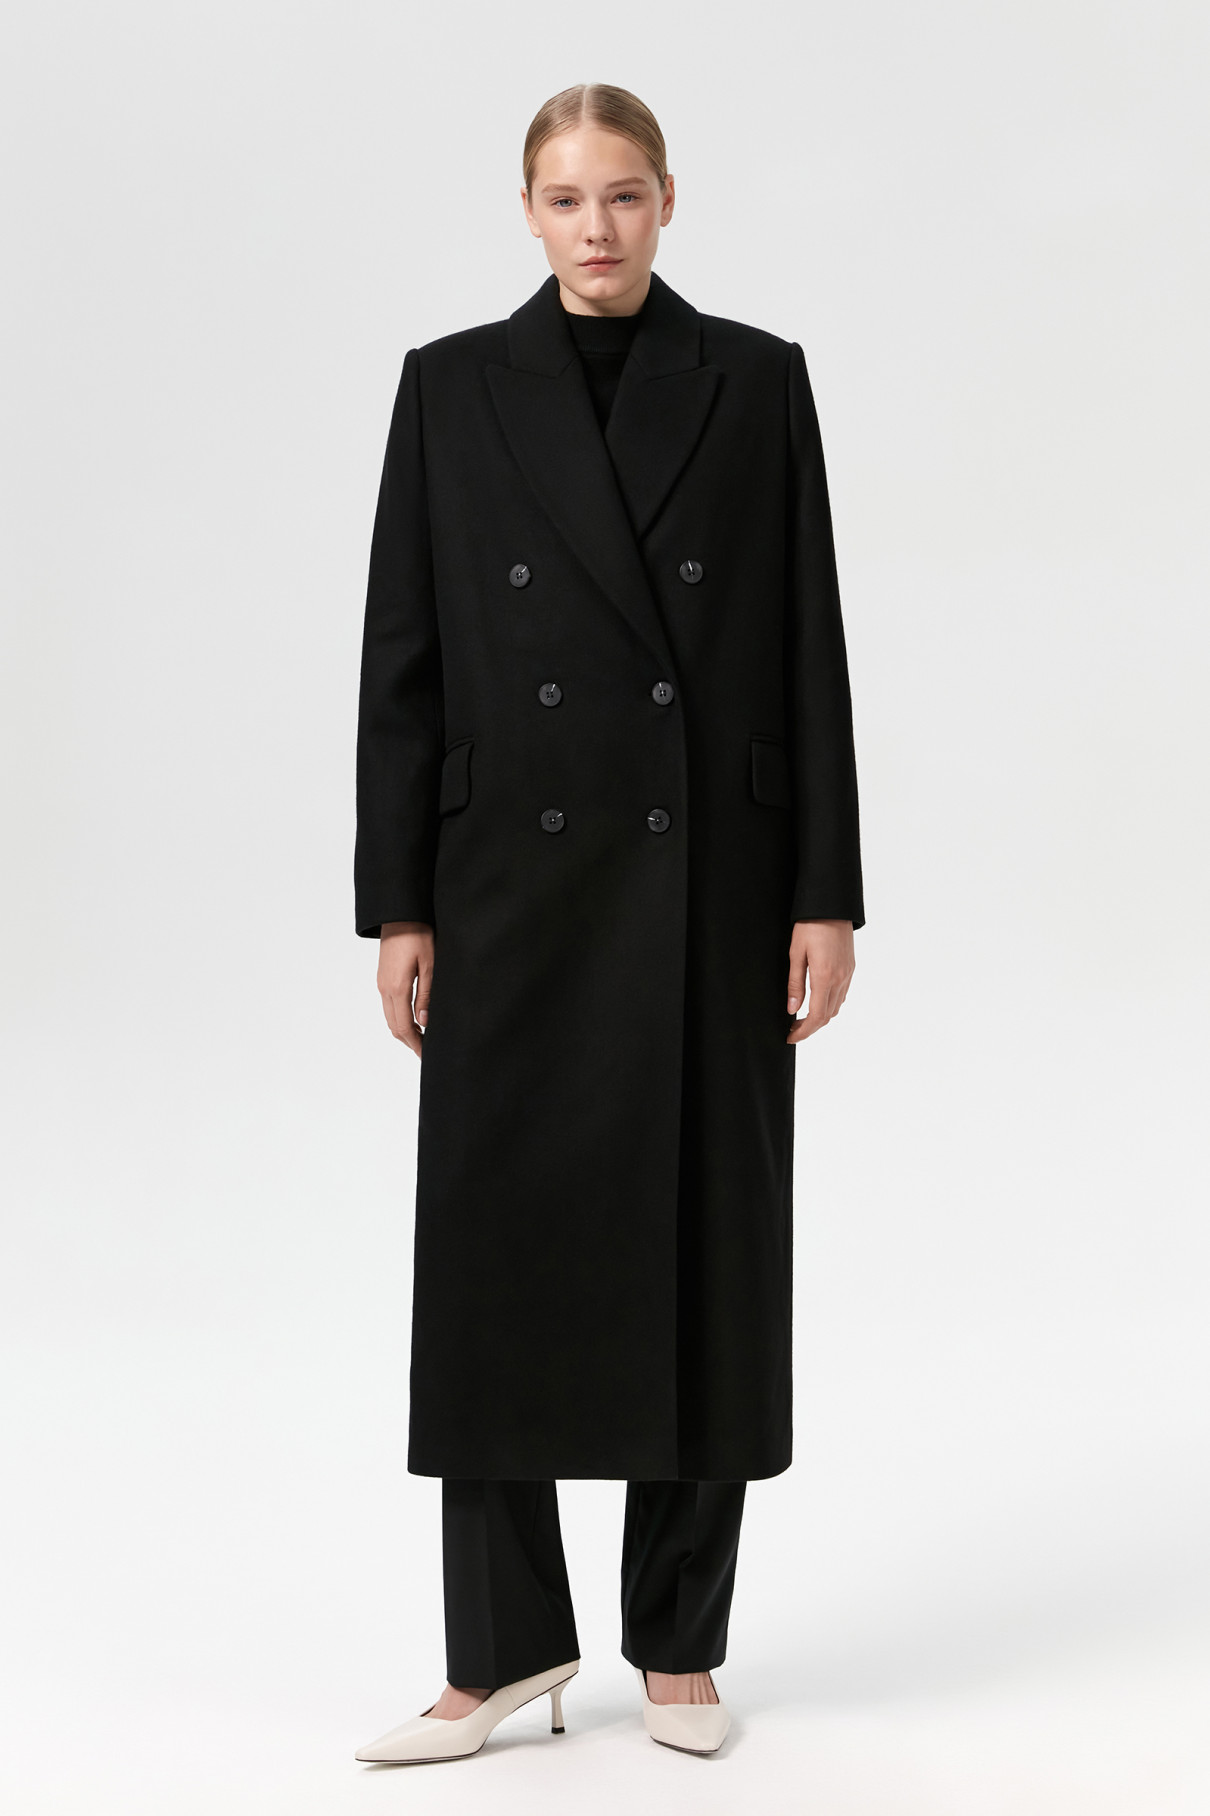 Пальто двубортное Sirius , Чёрный, арт. FR23FL1CT430W100BL купить в интернет-магазине